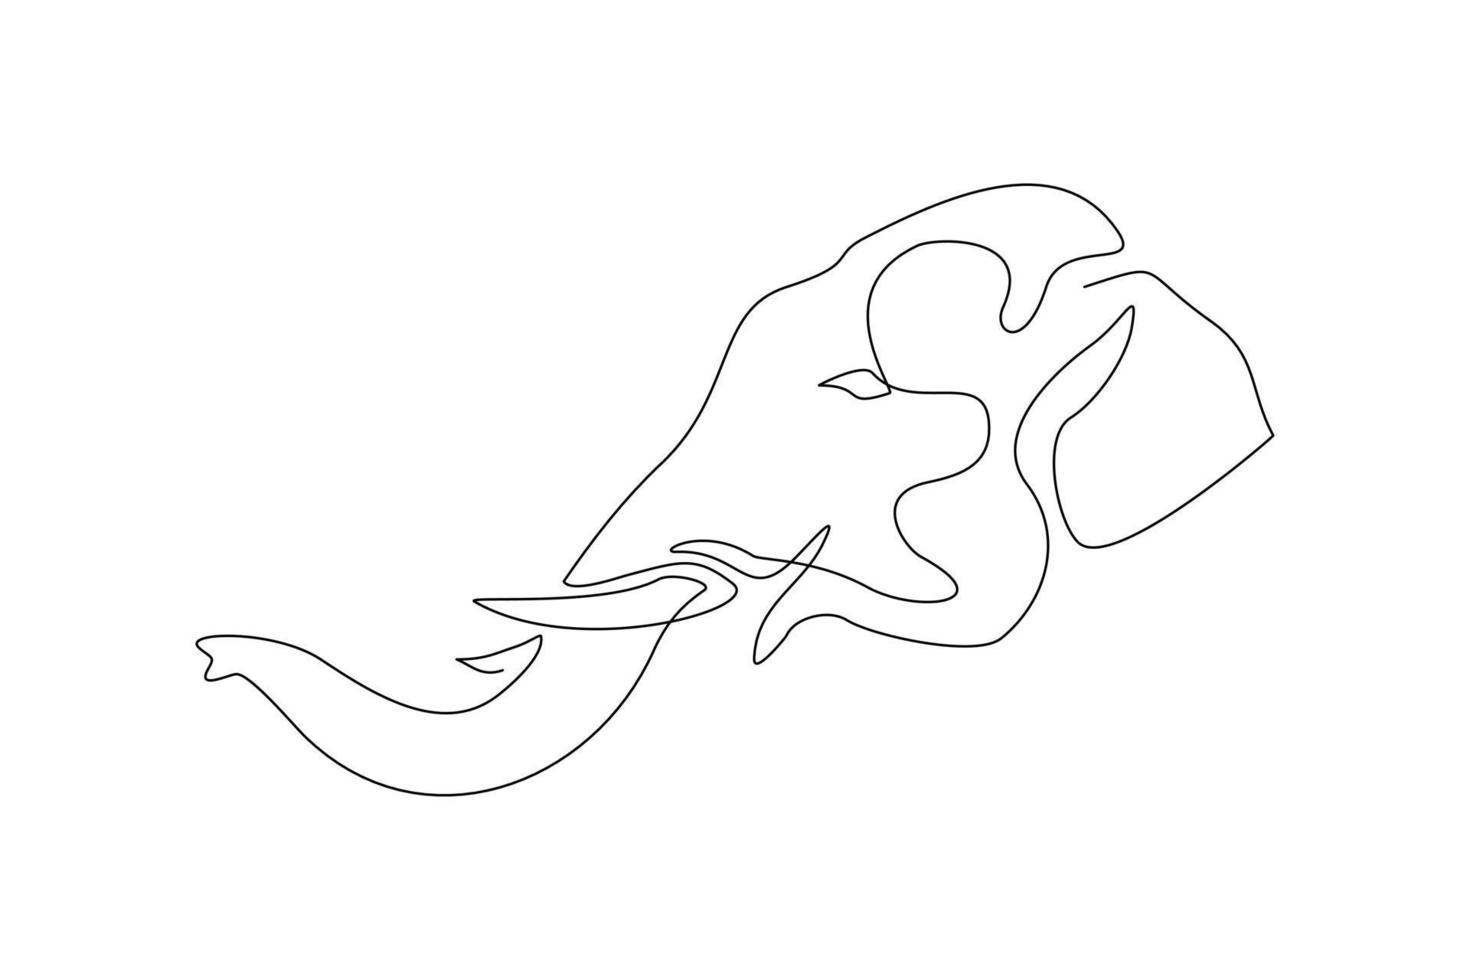 testa di elefante in linea continua. singola linea d'arte di elefante selvatico. illustrazione vettoriale